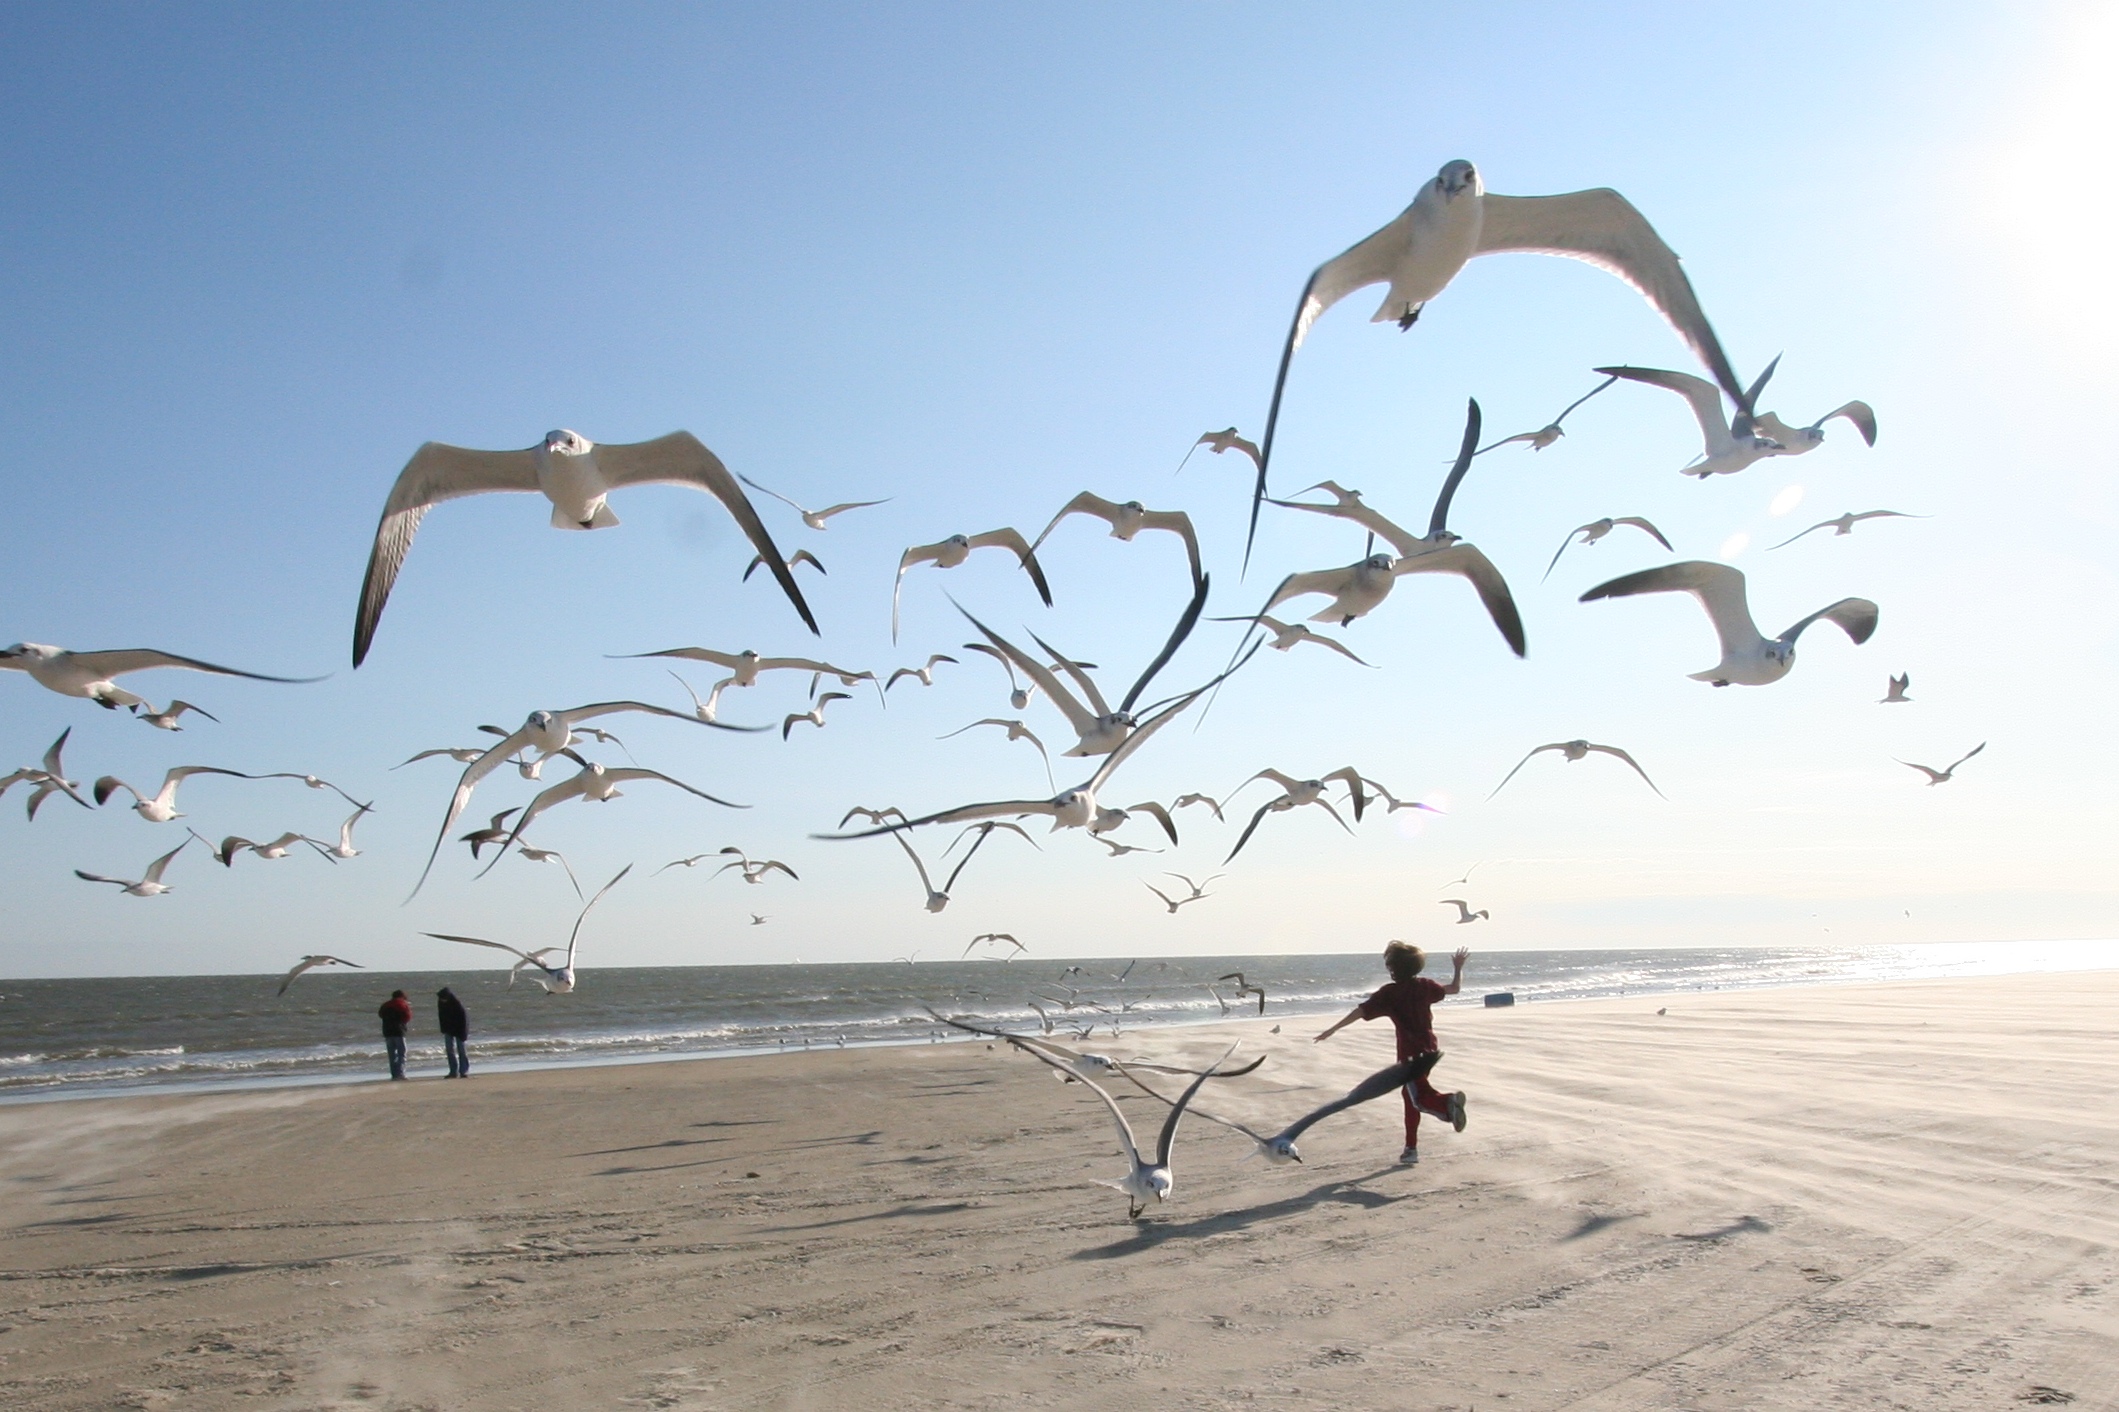 Движение счастья жизни. Море, Чайки. Счастье. Птицы над головой. Фотосессия на пляже с чайками.